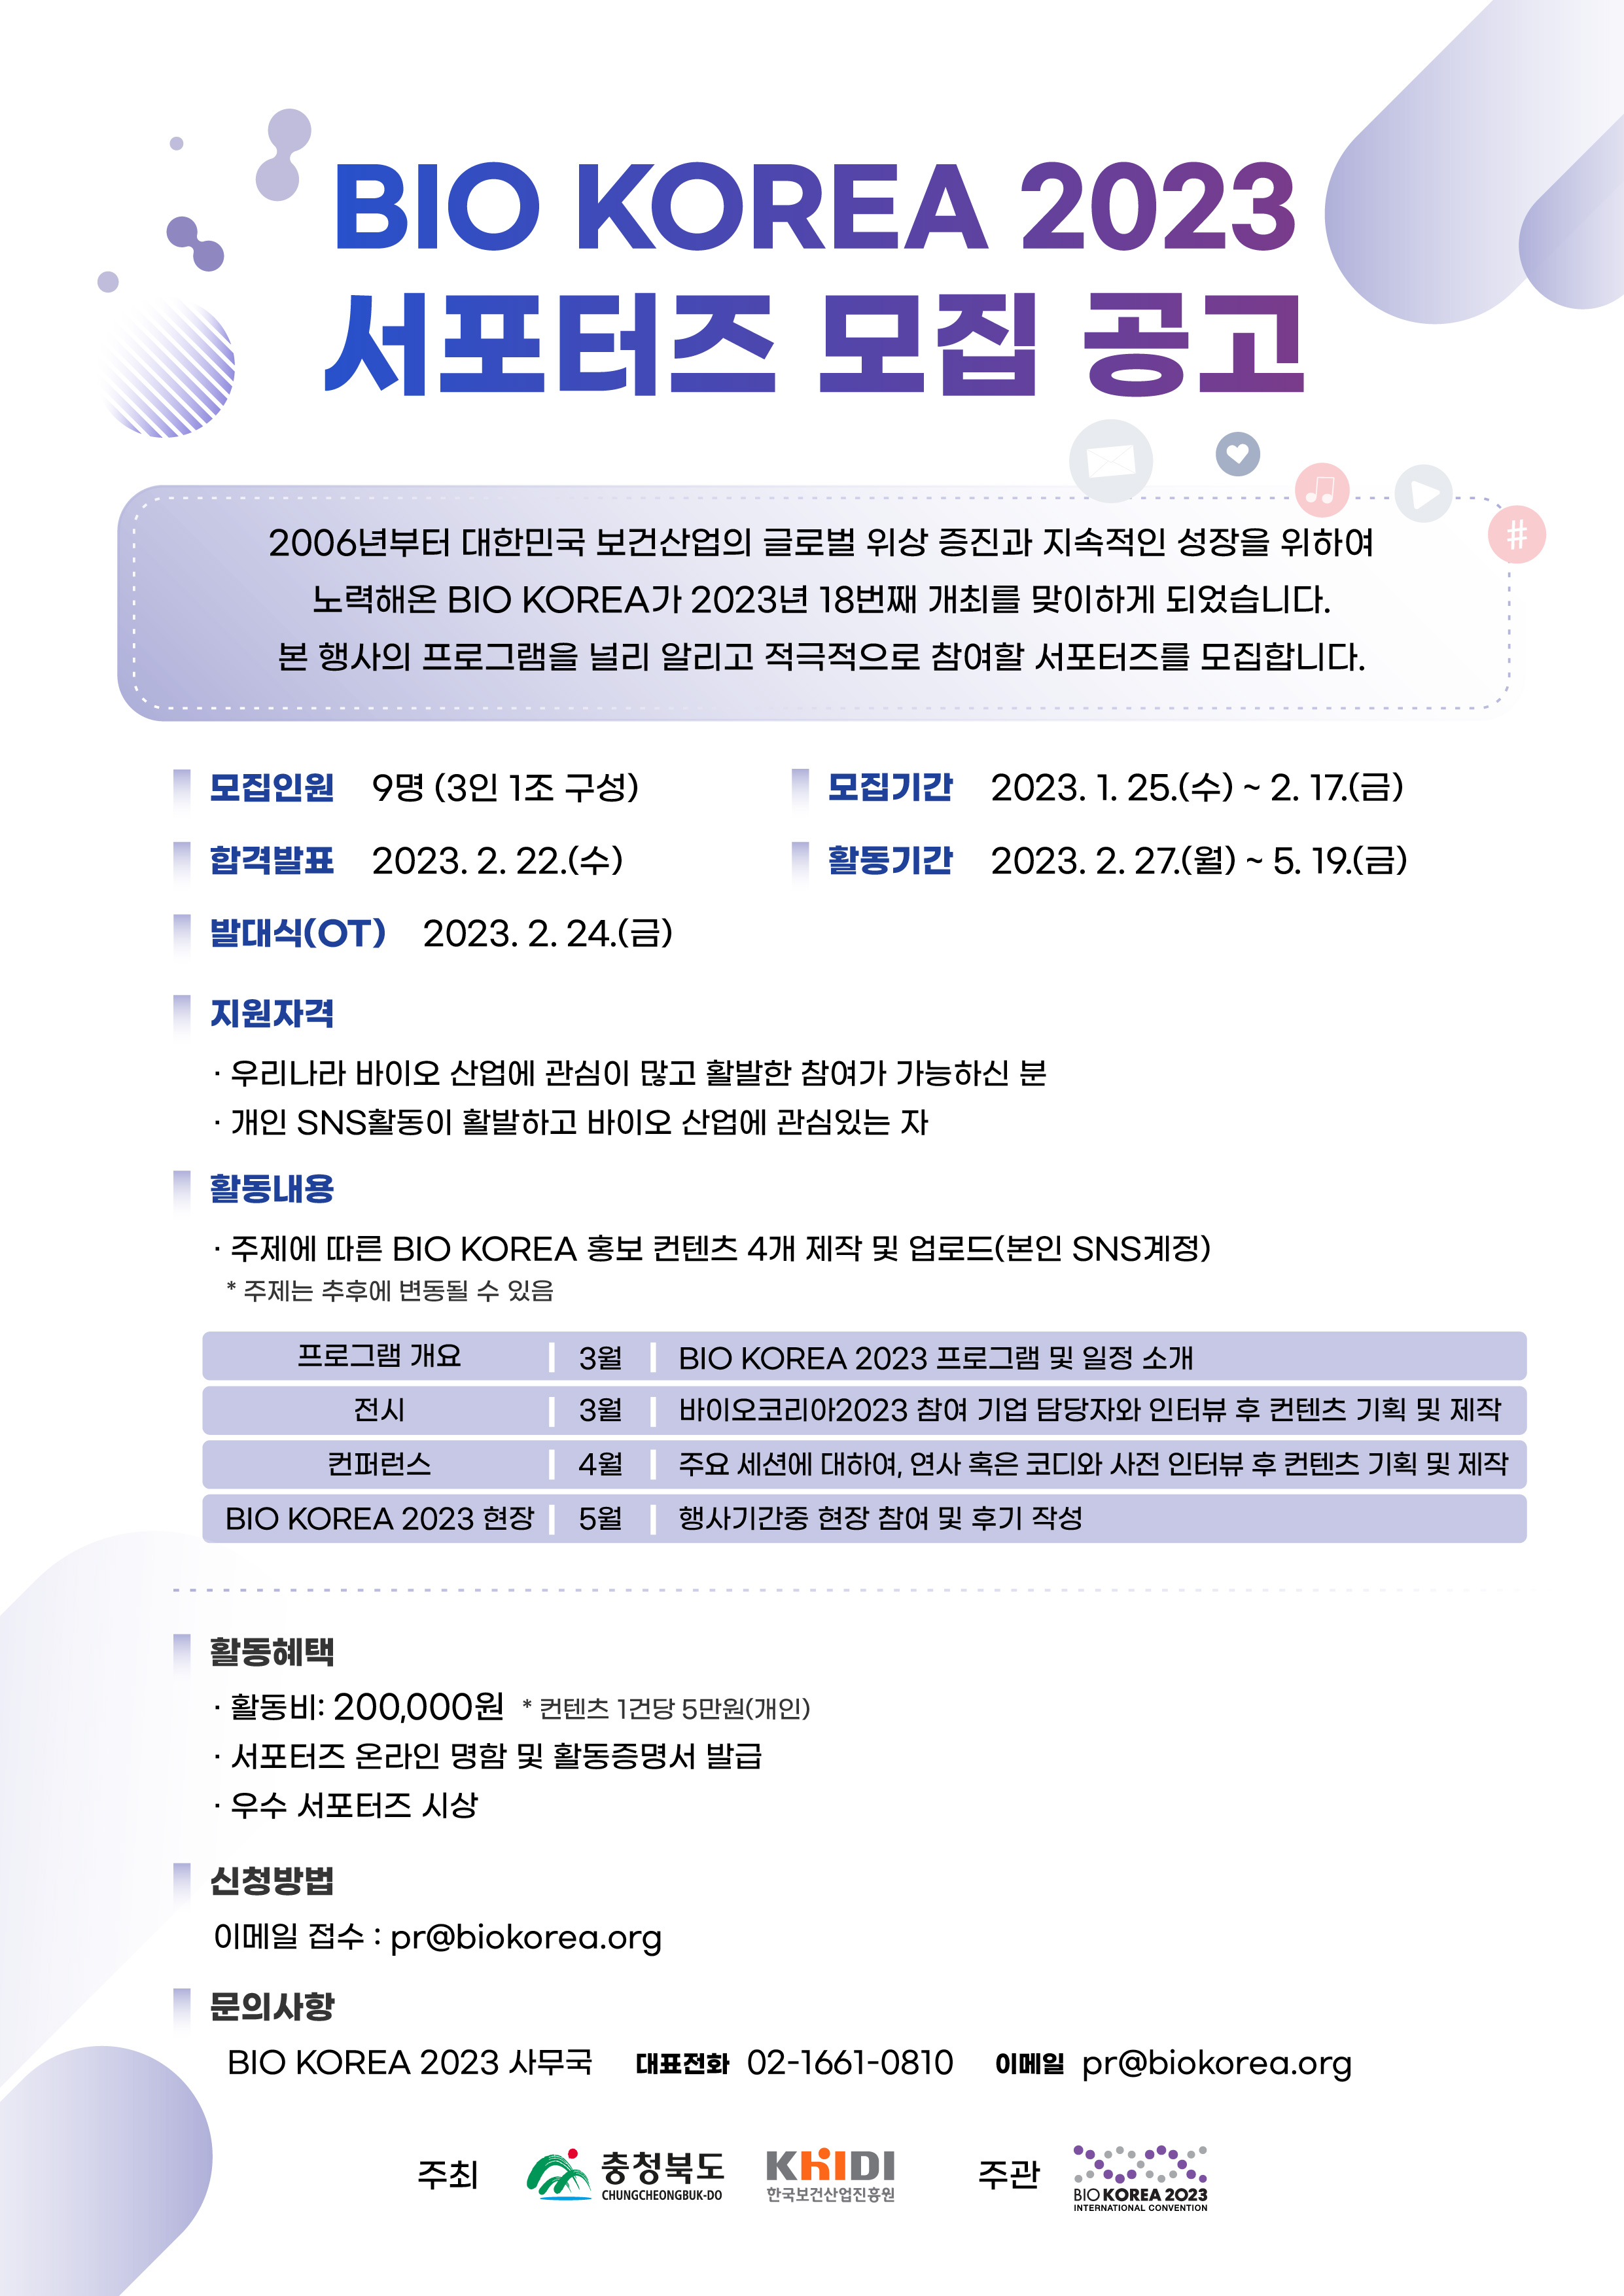 BIO KOREA 2023 SNS 서포터즈 모집